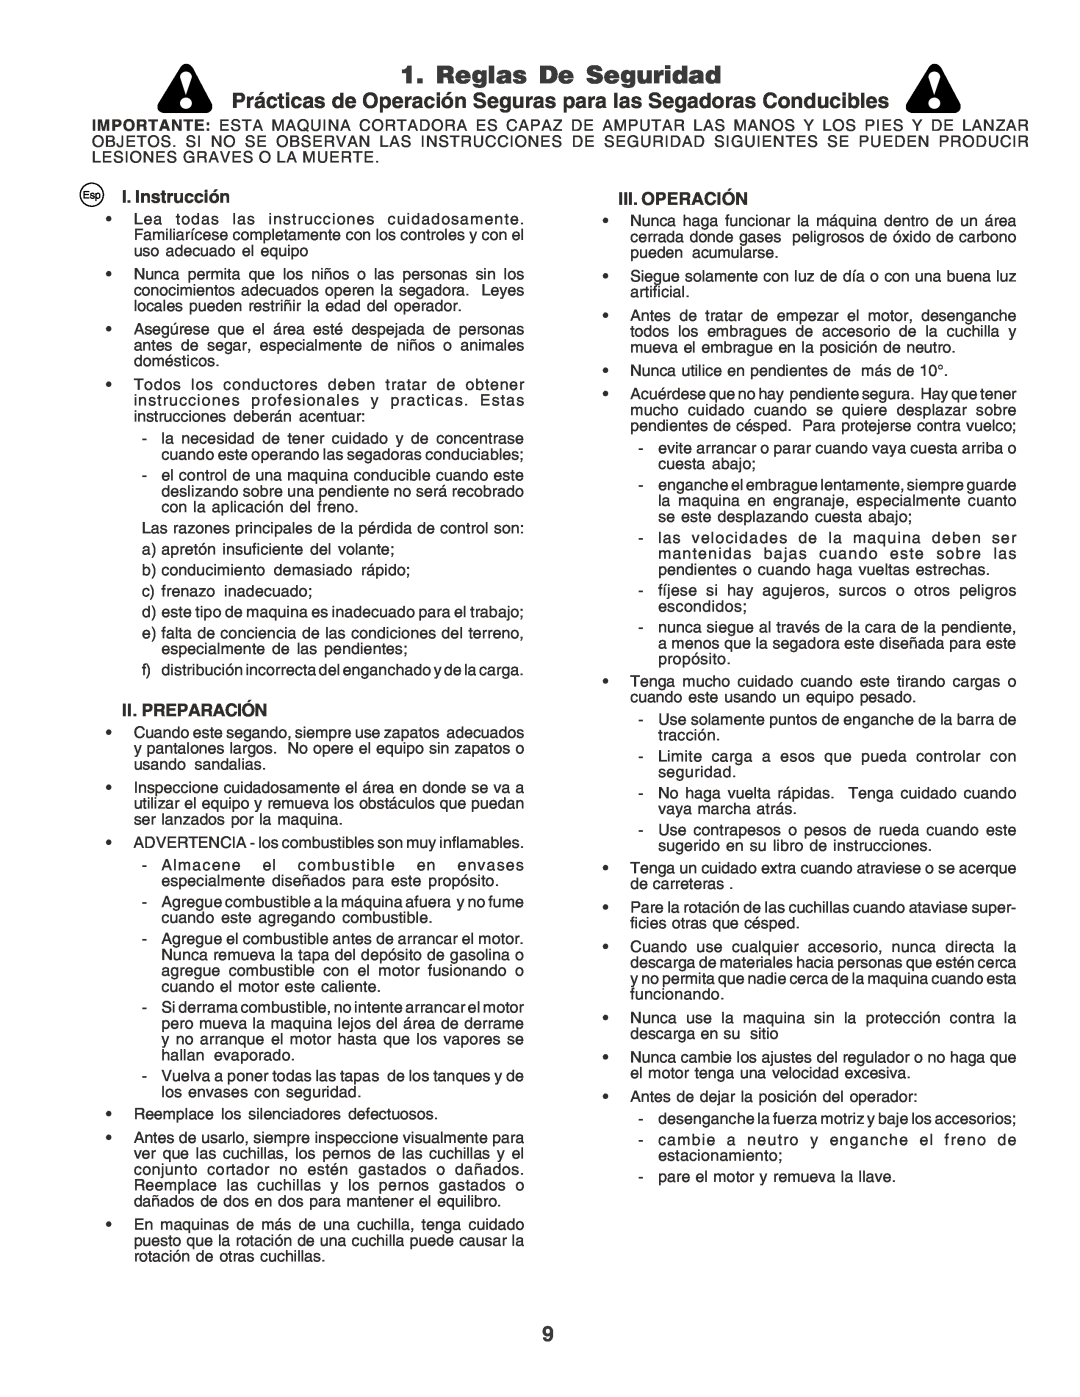 Husqvarna LT135 Reglas De Seguridad, Prácticas de Operación Seguras para las Segadoras Conducibles, I. Instrucción 